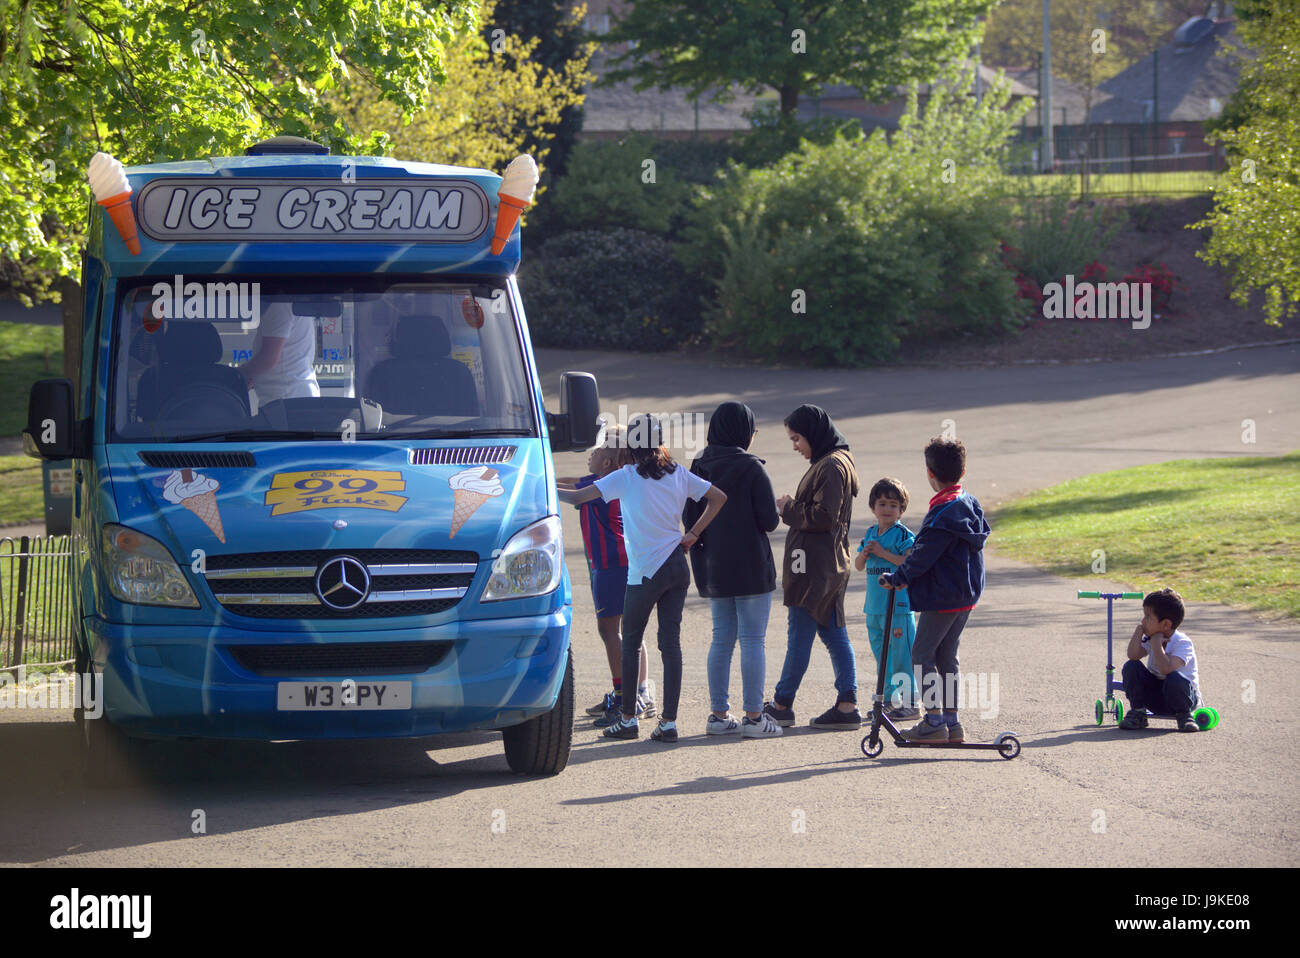 Glasgow Kelvingrove Park ice cream van scènes d'attente de camions Banque D'Images